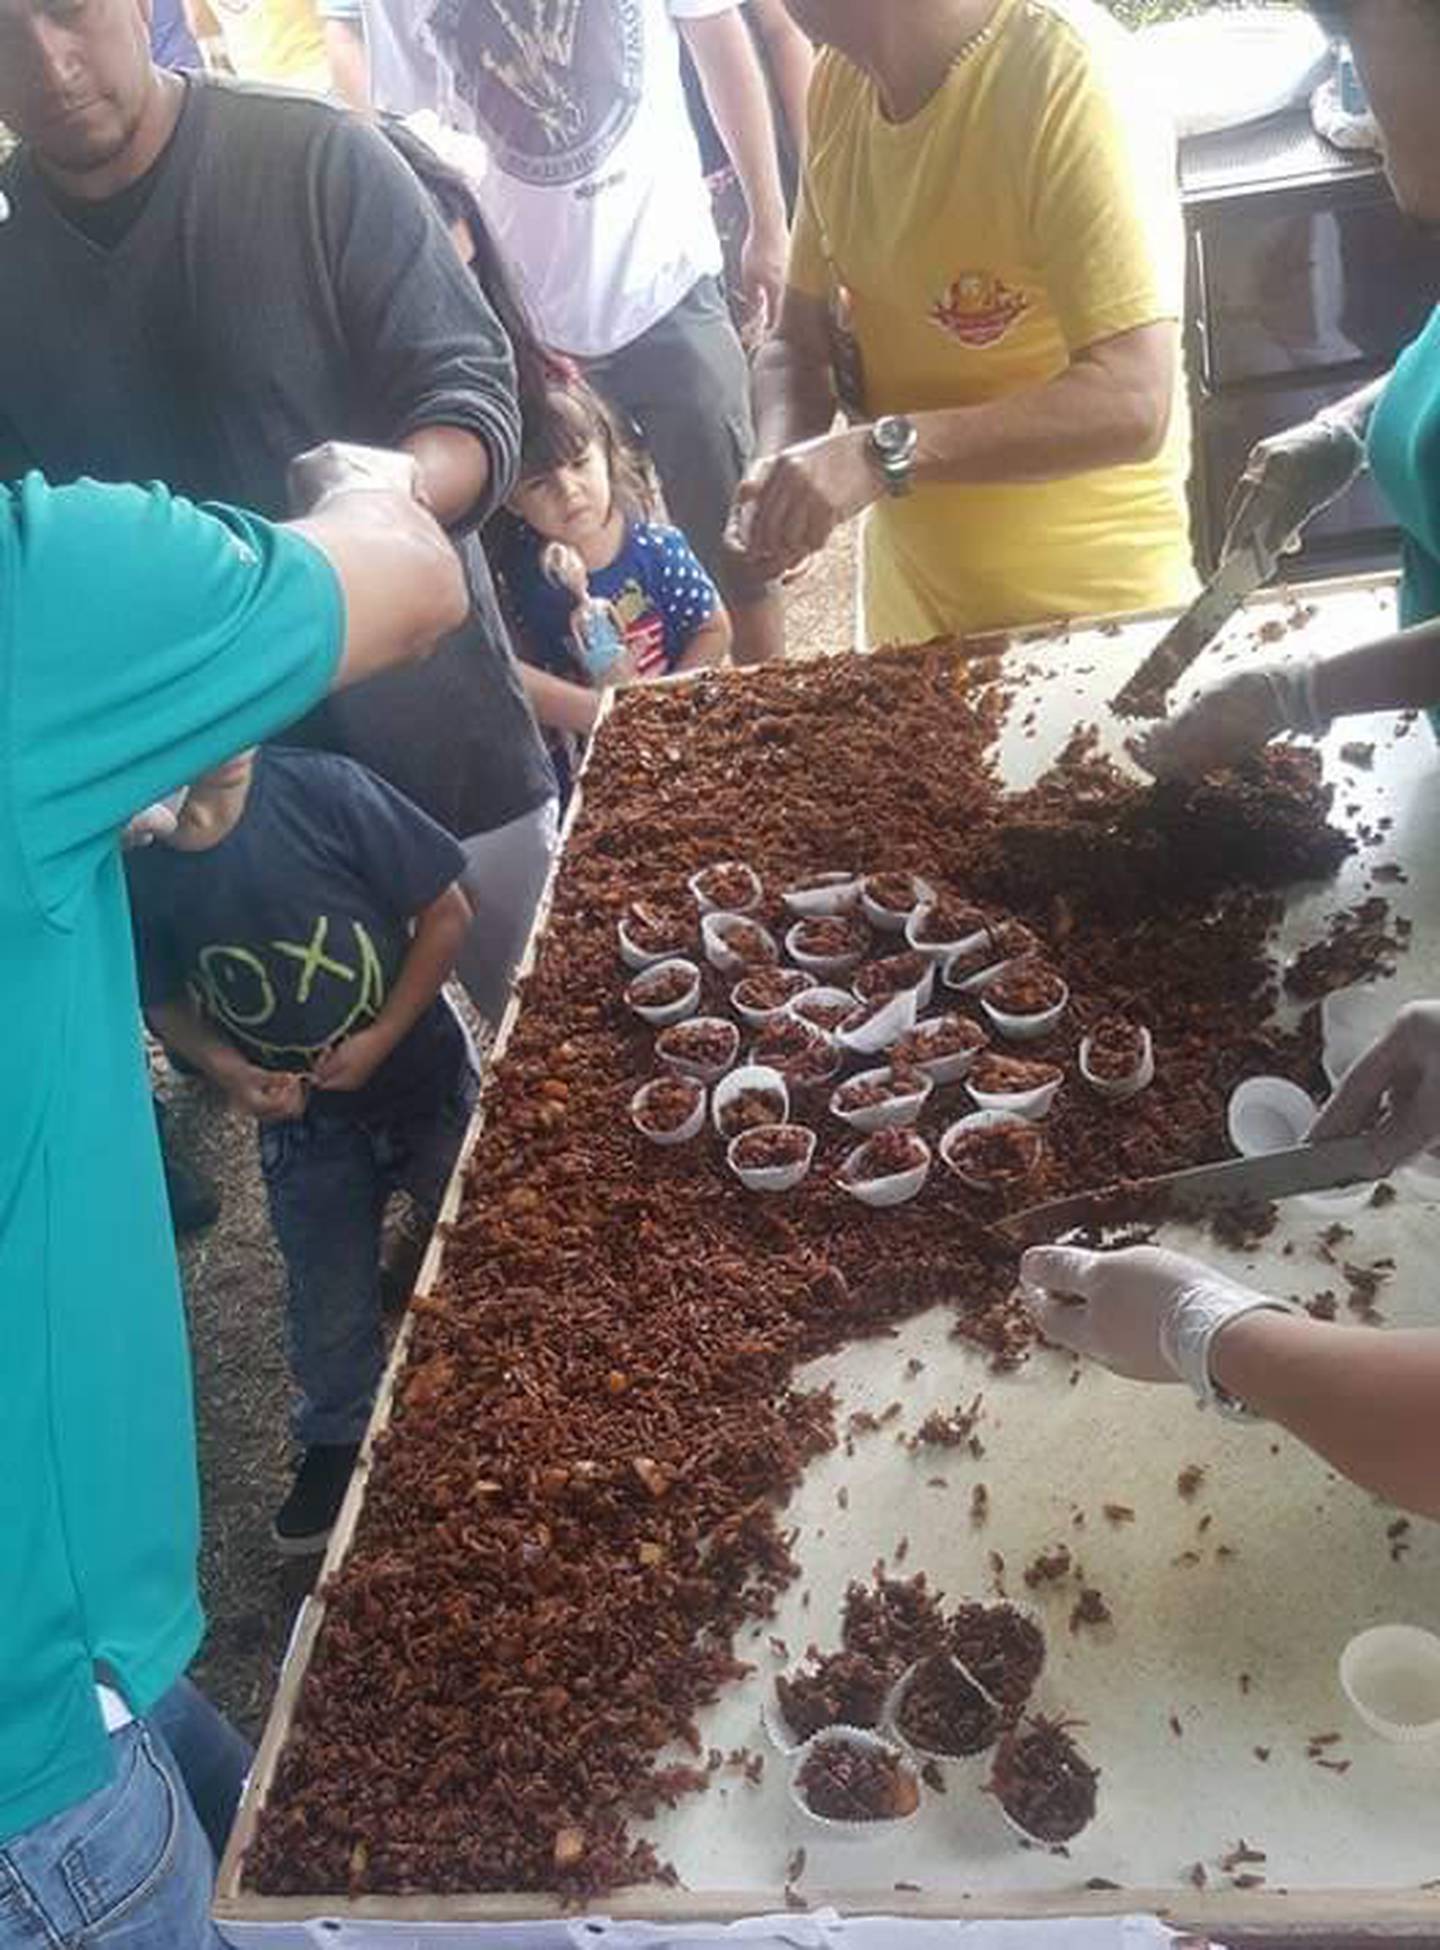 El domingo 2 de abril, en Desamparados, como parte de las actividades de la octava edición de la Feria de la Cajeta Desamparados 2023, se preparará la cajeta de coco más grande de la historia de Costa Rica